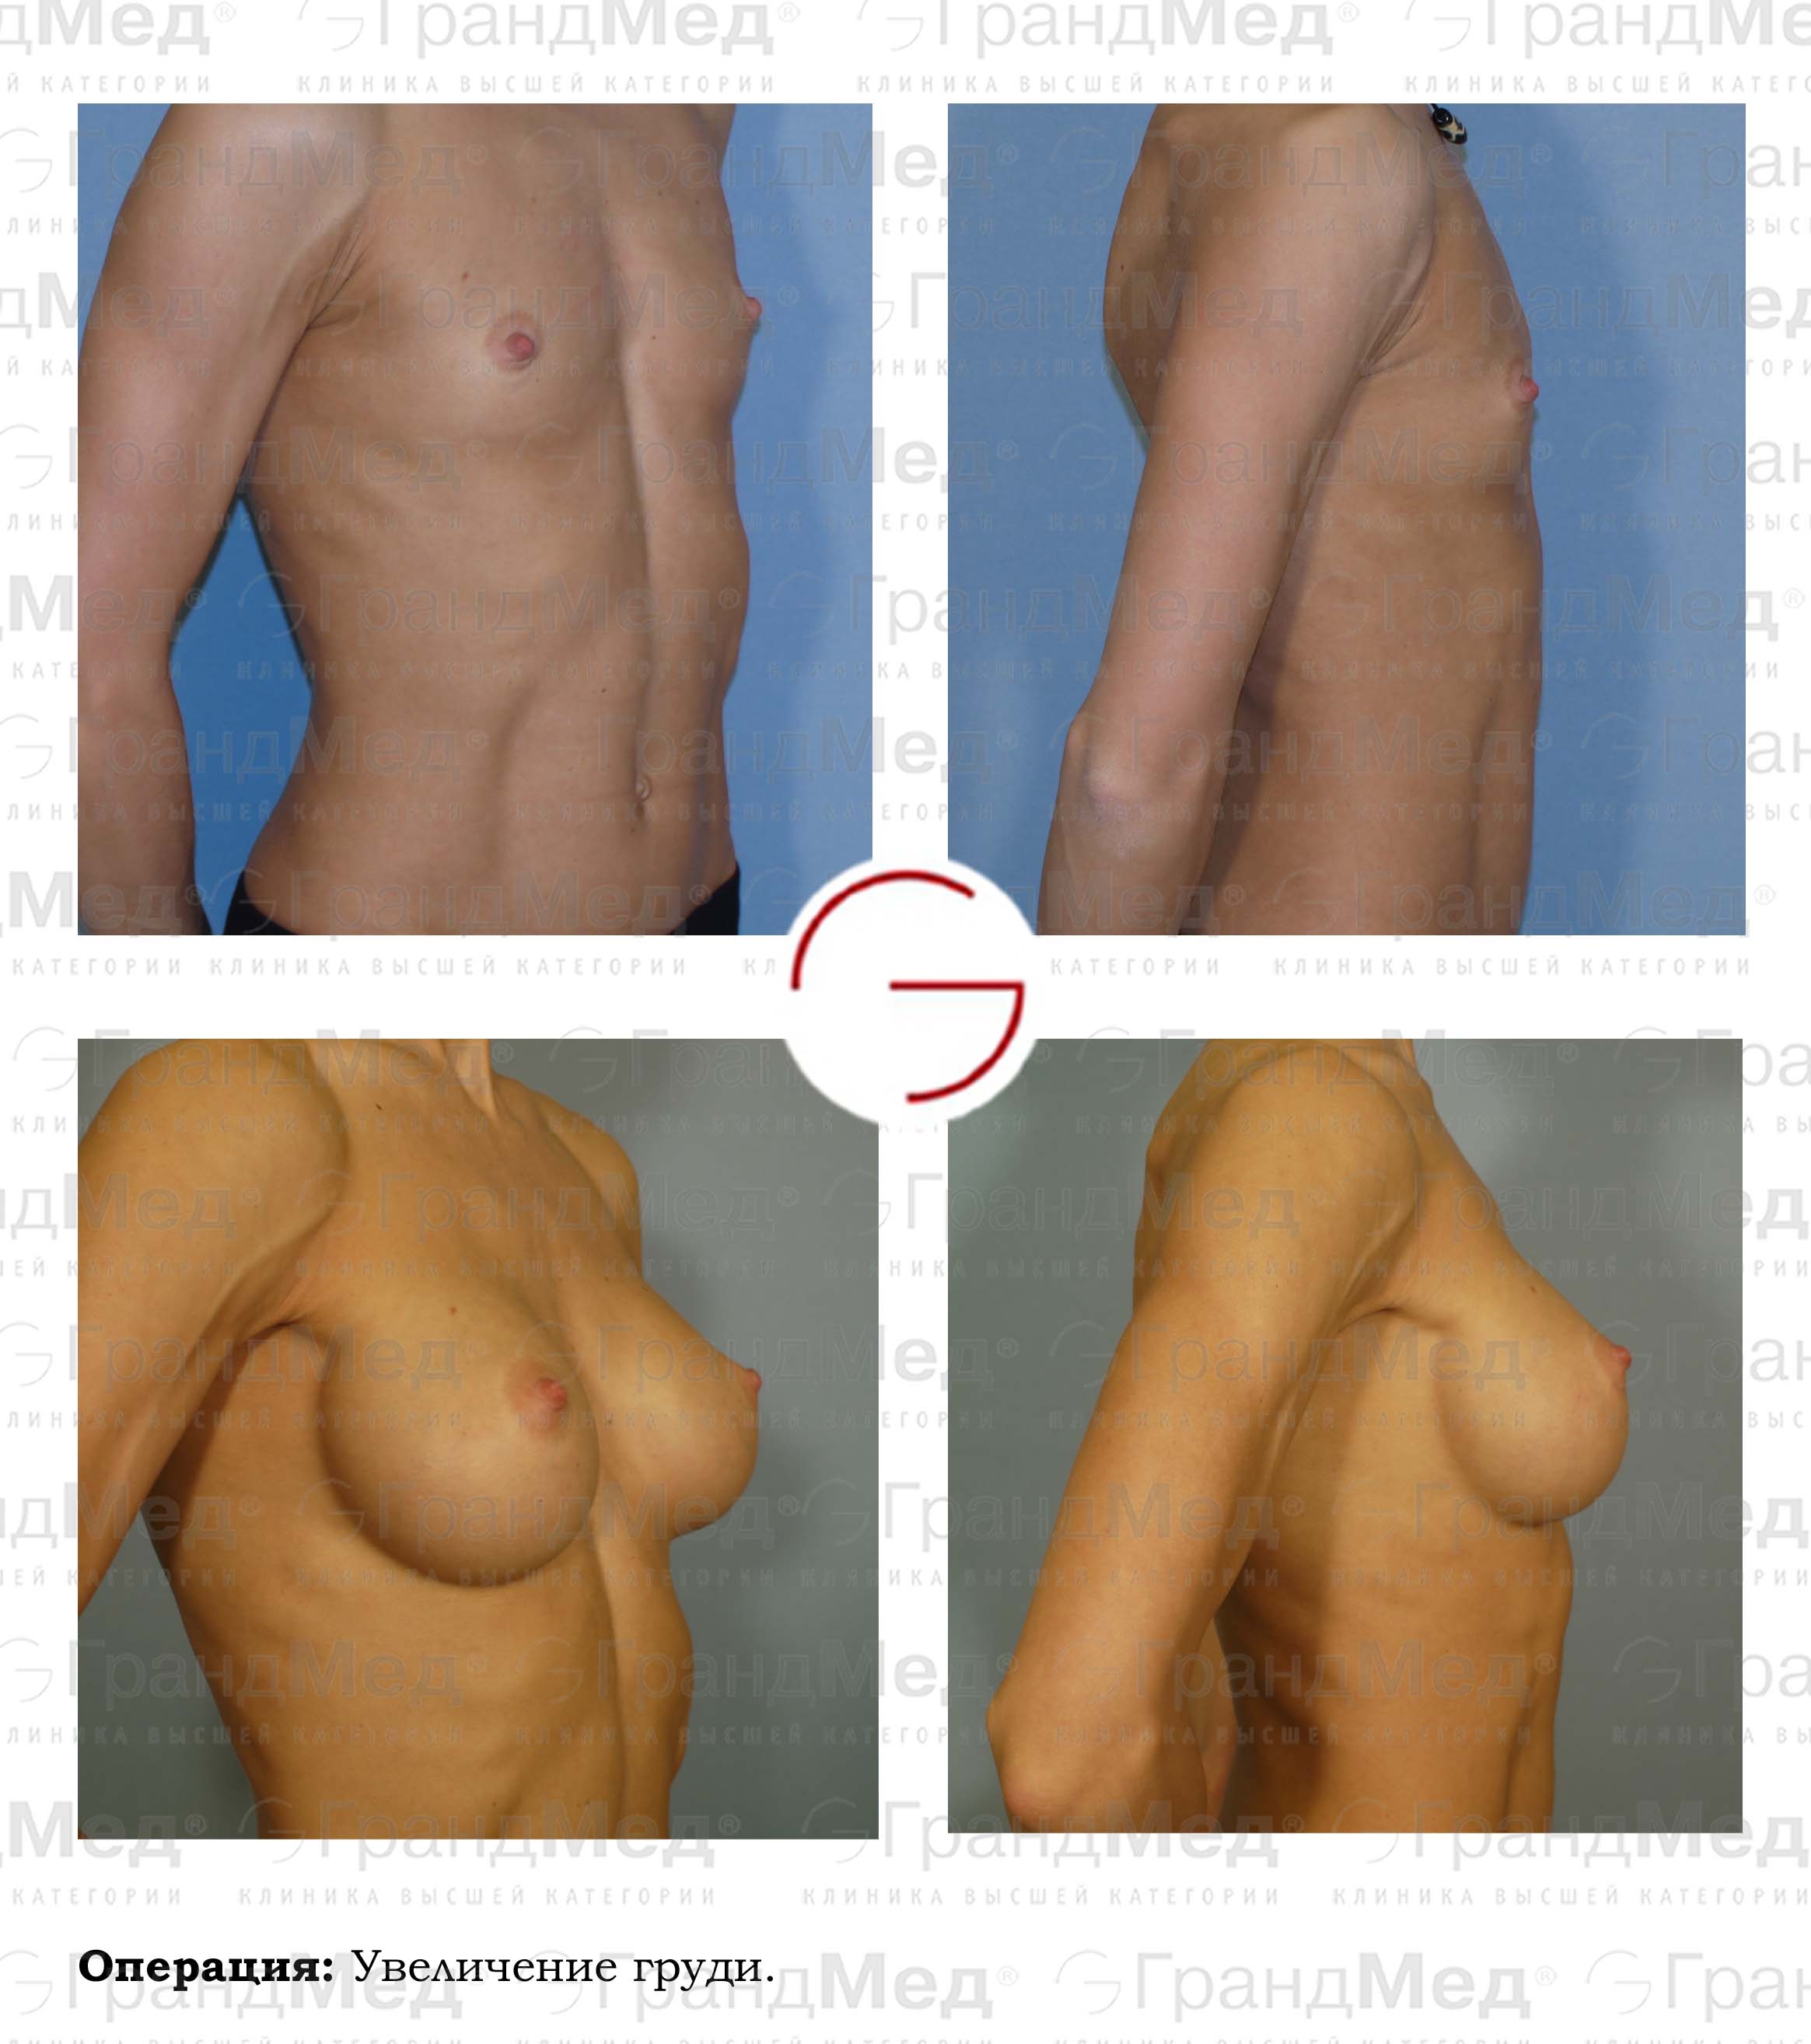 как женщин делают операцию на груди фото 105